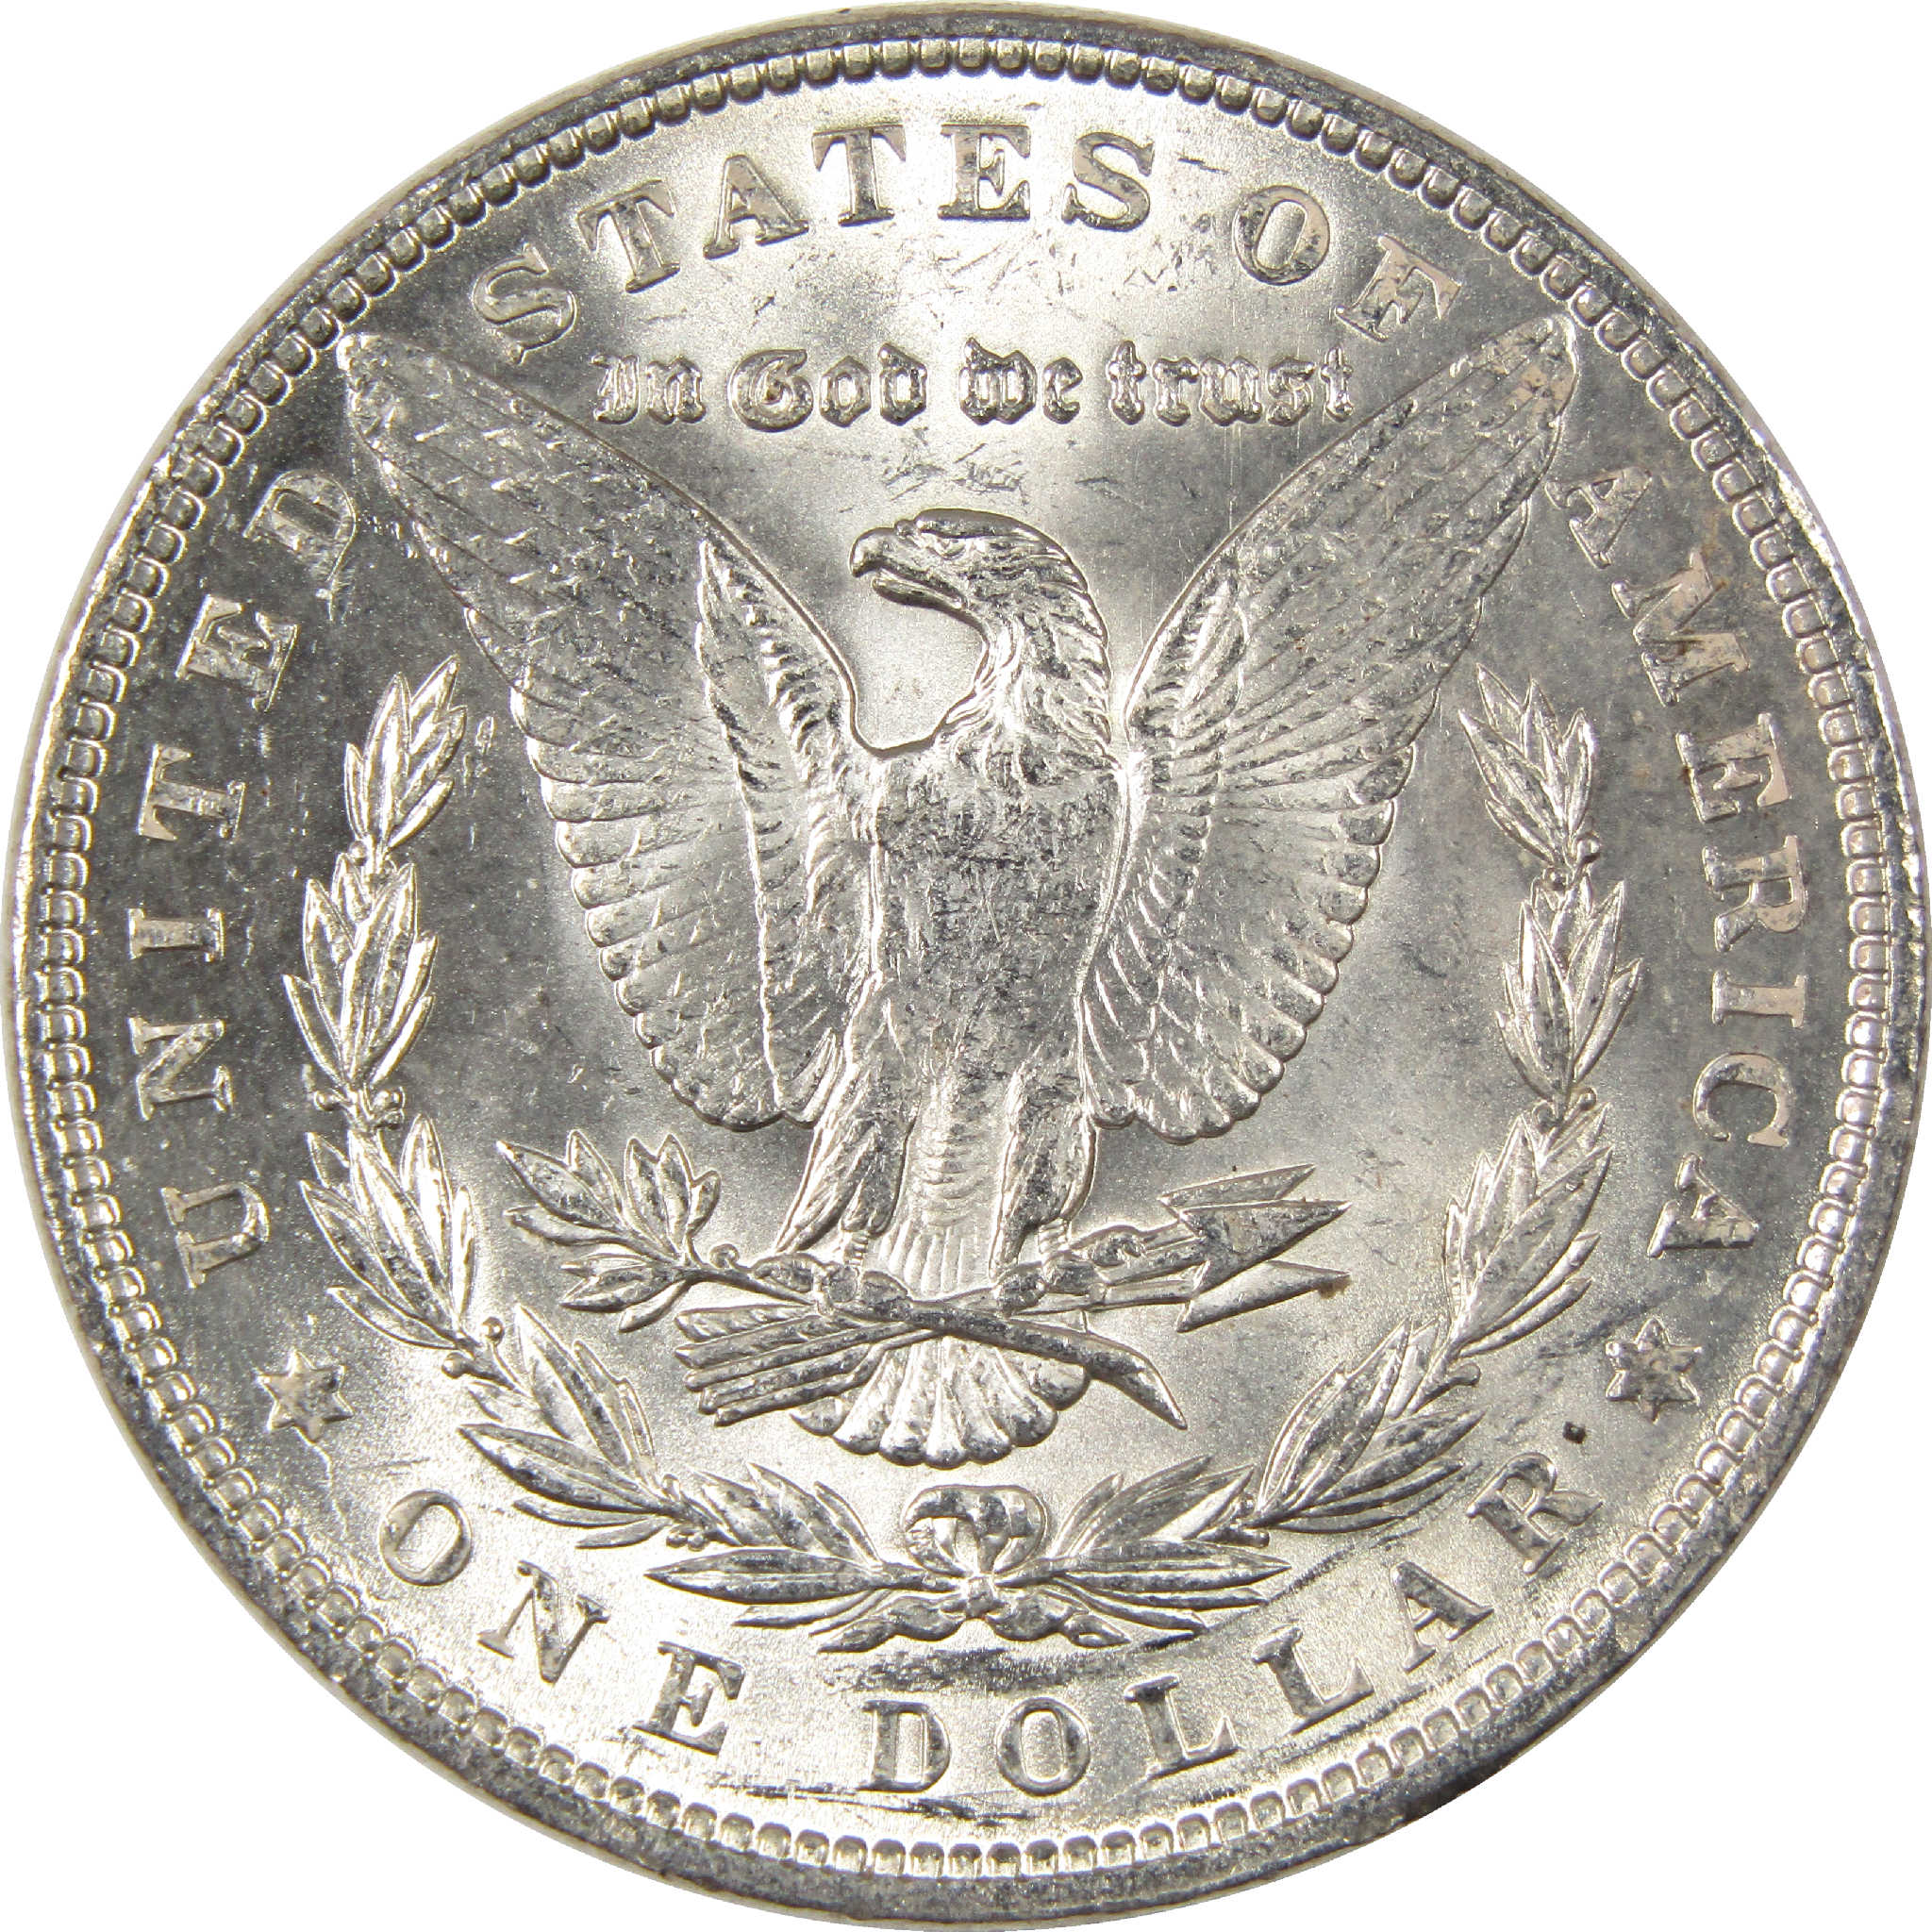 1890 Morgan Dollar Uncirculated Silver $1 Coin - Morgan coin - Morgan silver dollar - Morgan silver dollar for sale - Profile Coins &amp; Collectibles